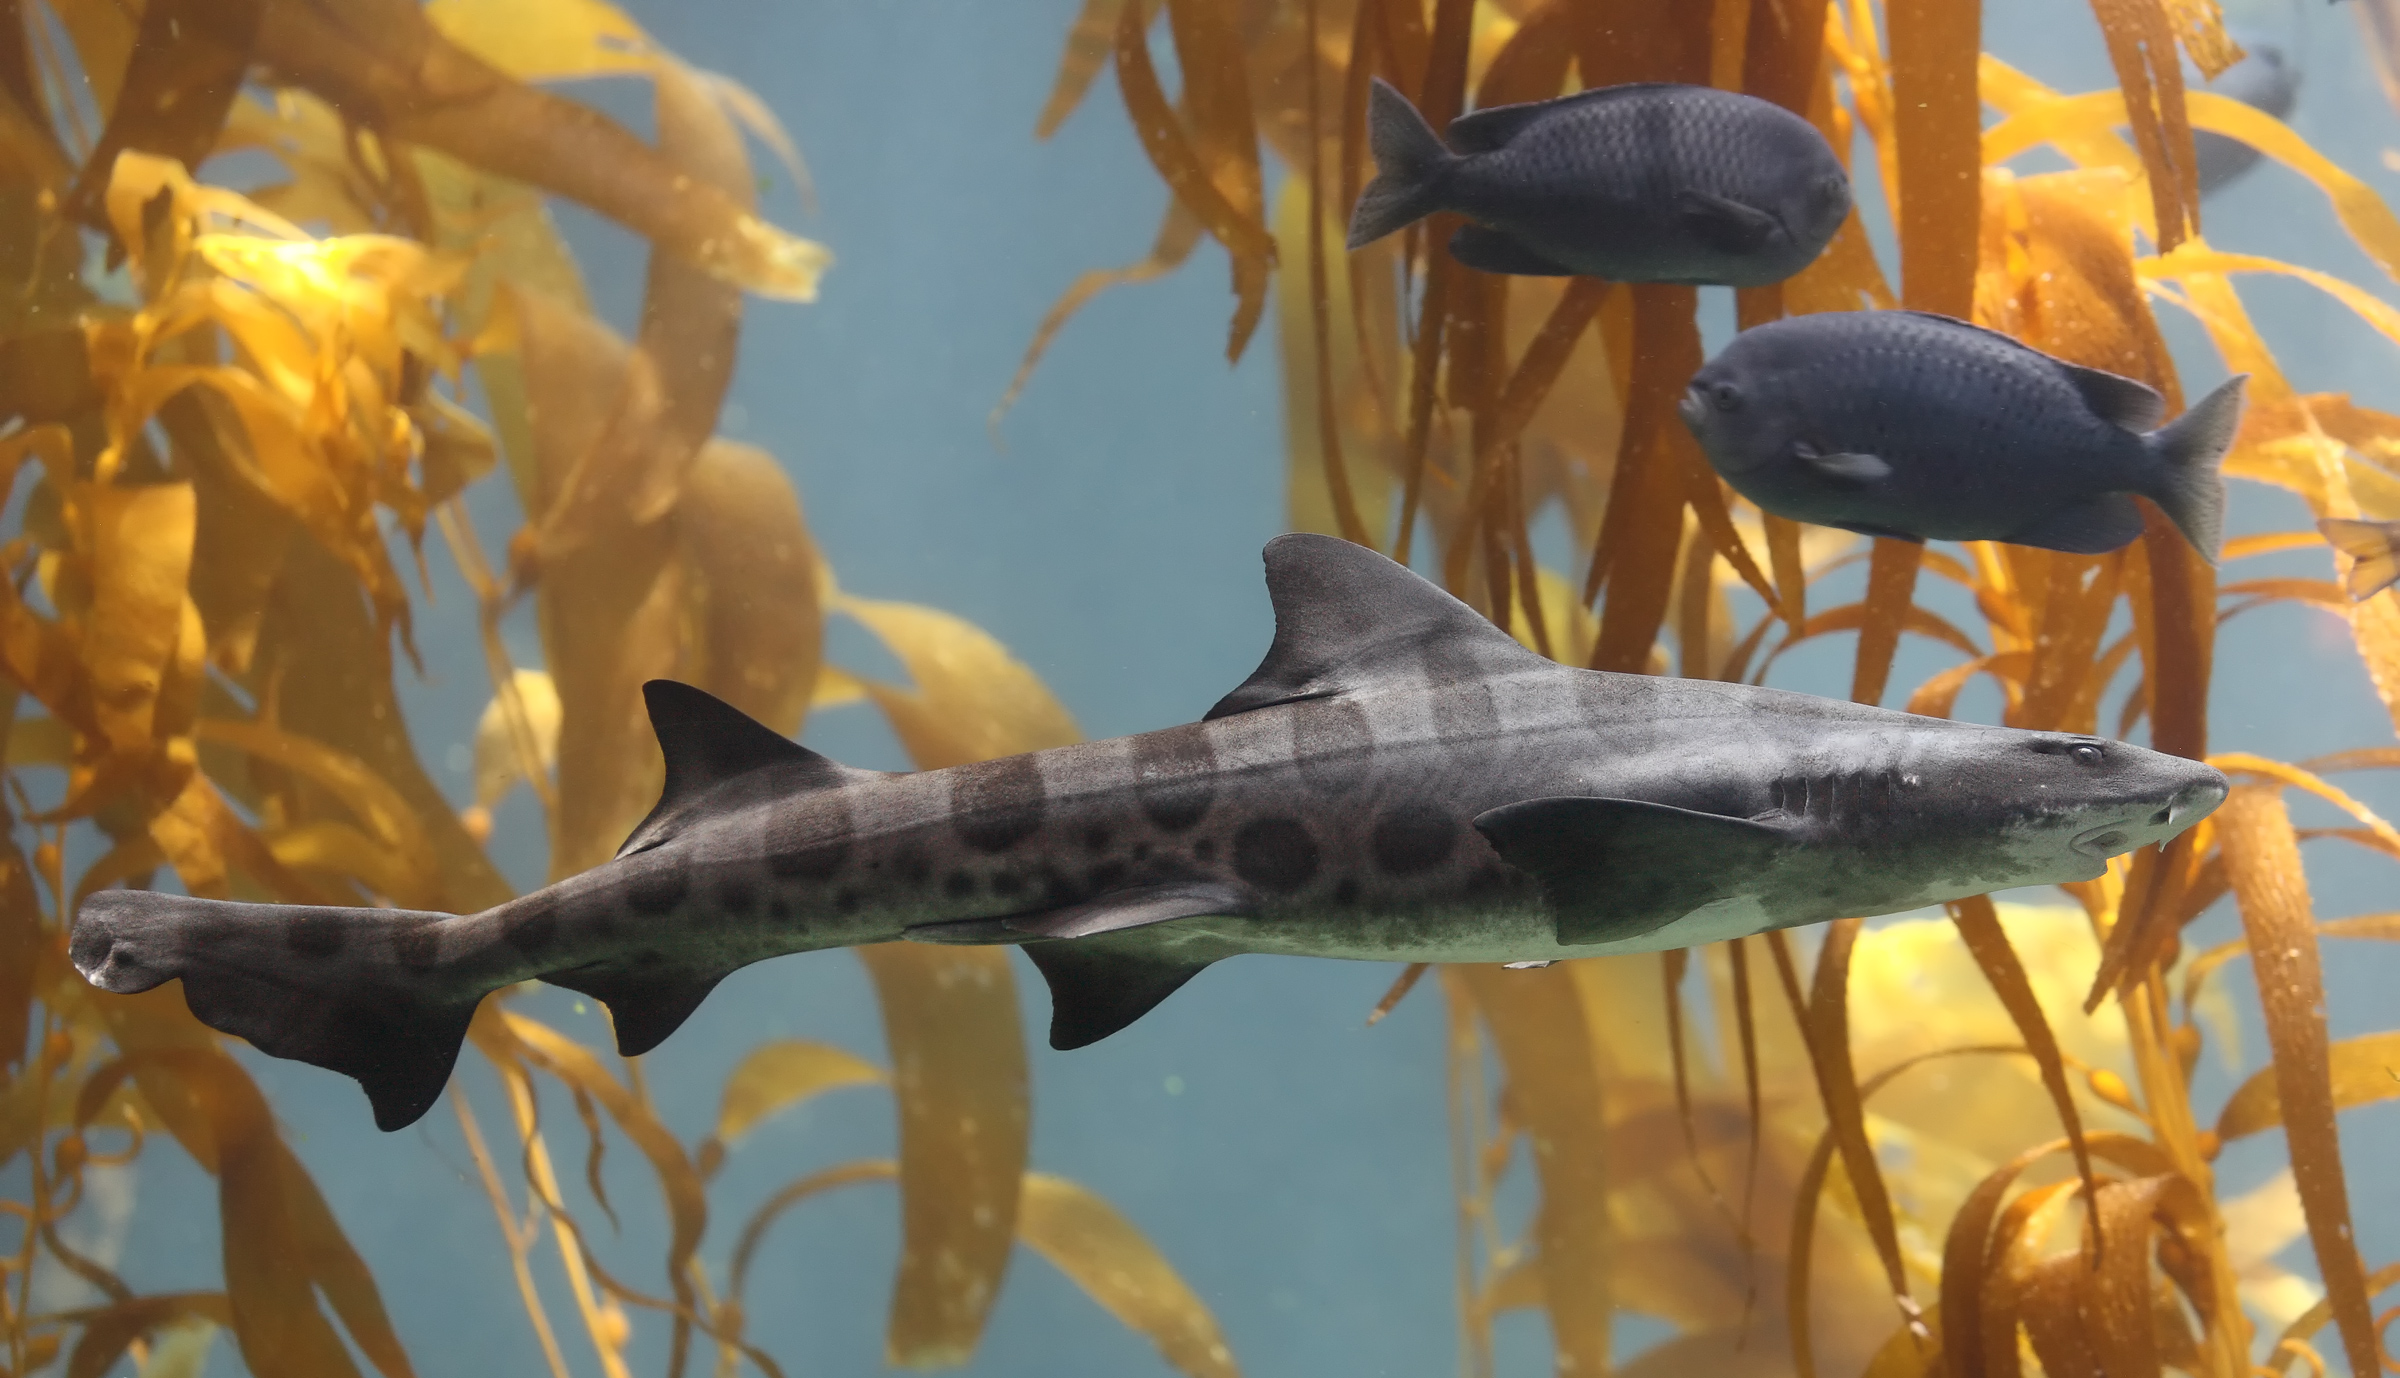 Leopard Shark in kelp forest